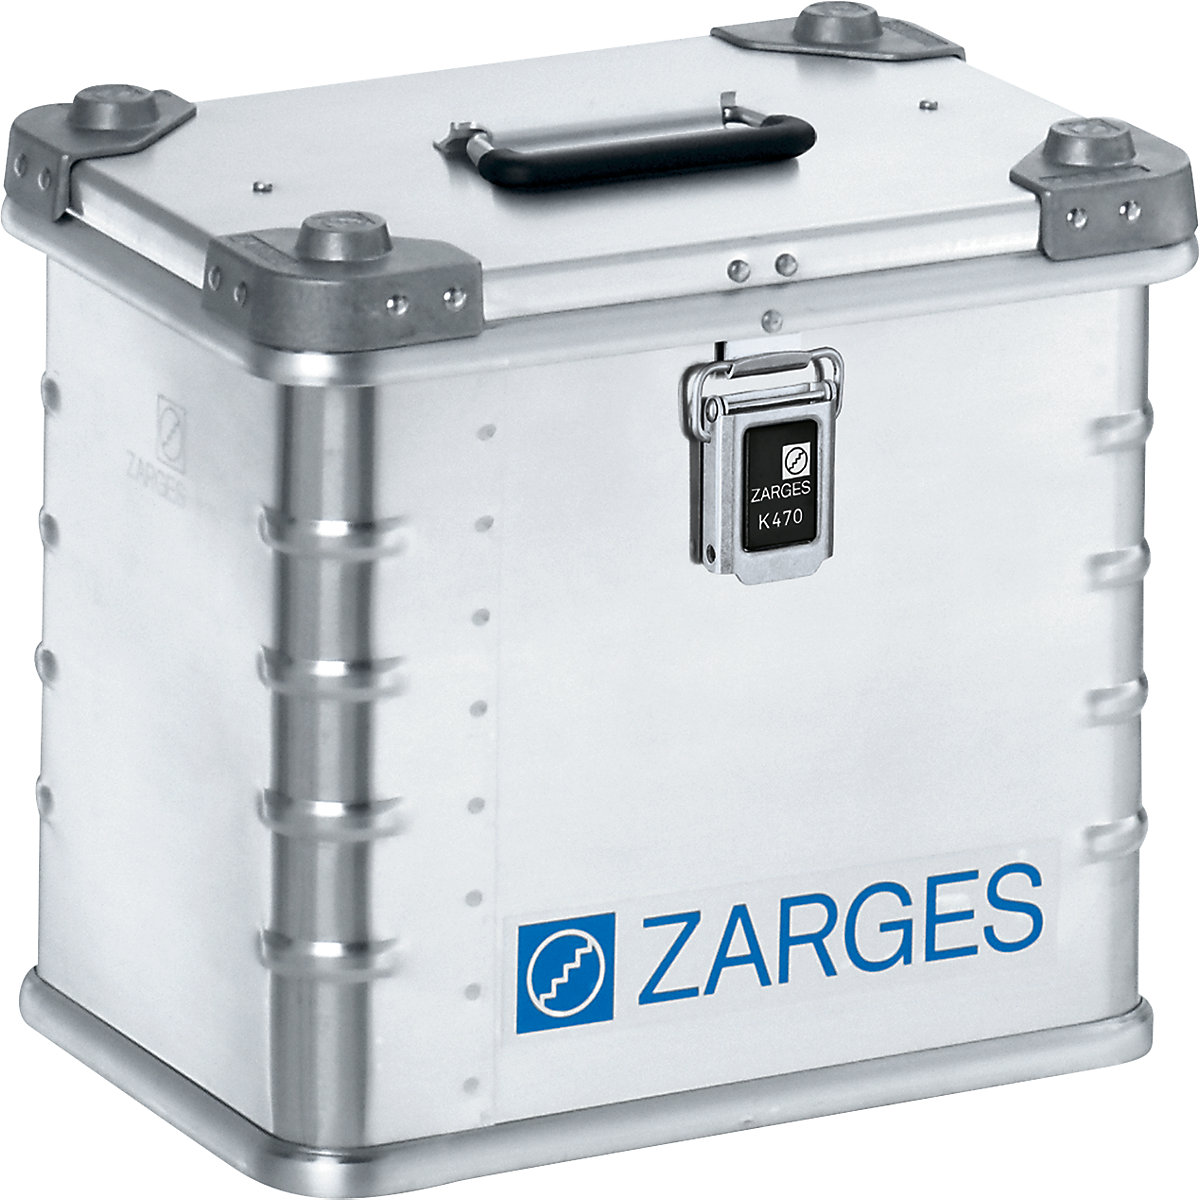 Contenitore per il trasporto in alluminio – ZARGES, capacità 27 l, lungh. x largh. x alt. interne 350 x 250 x 310 mm, in versione robusta